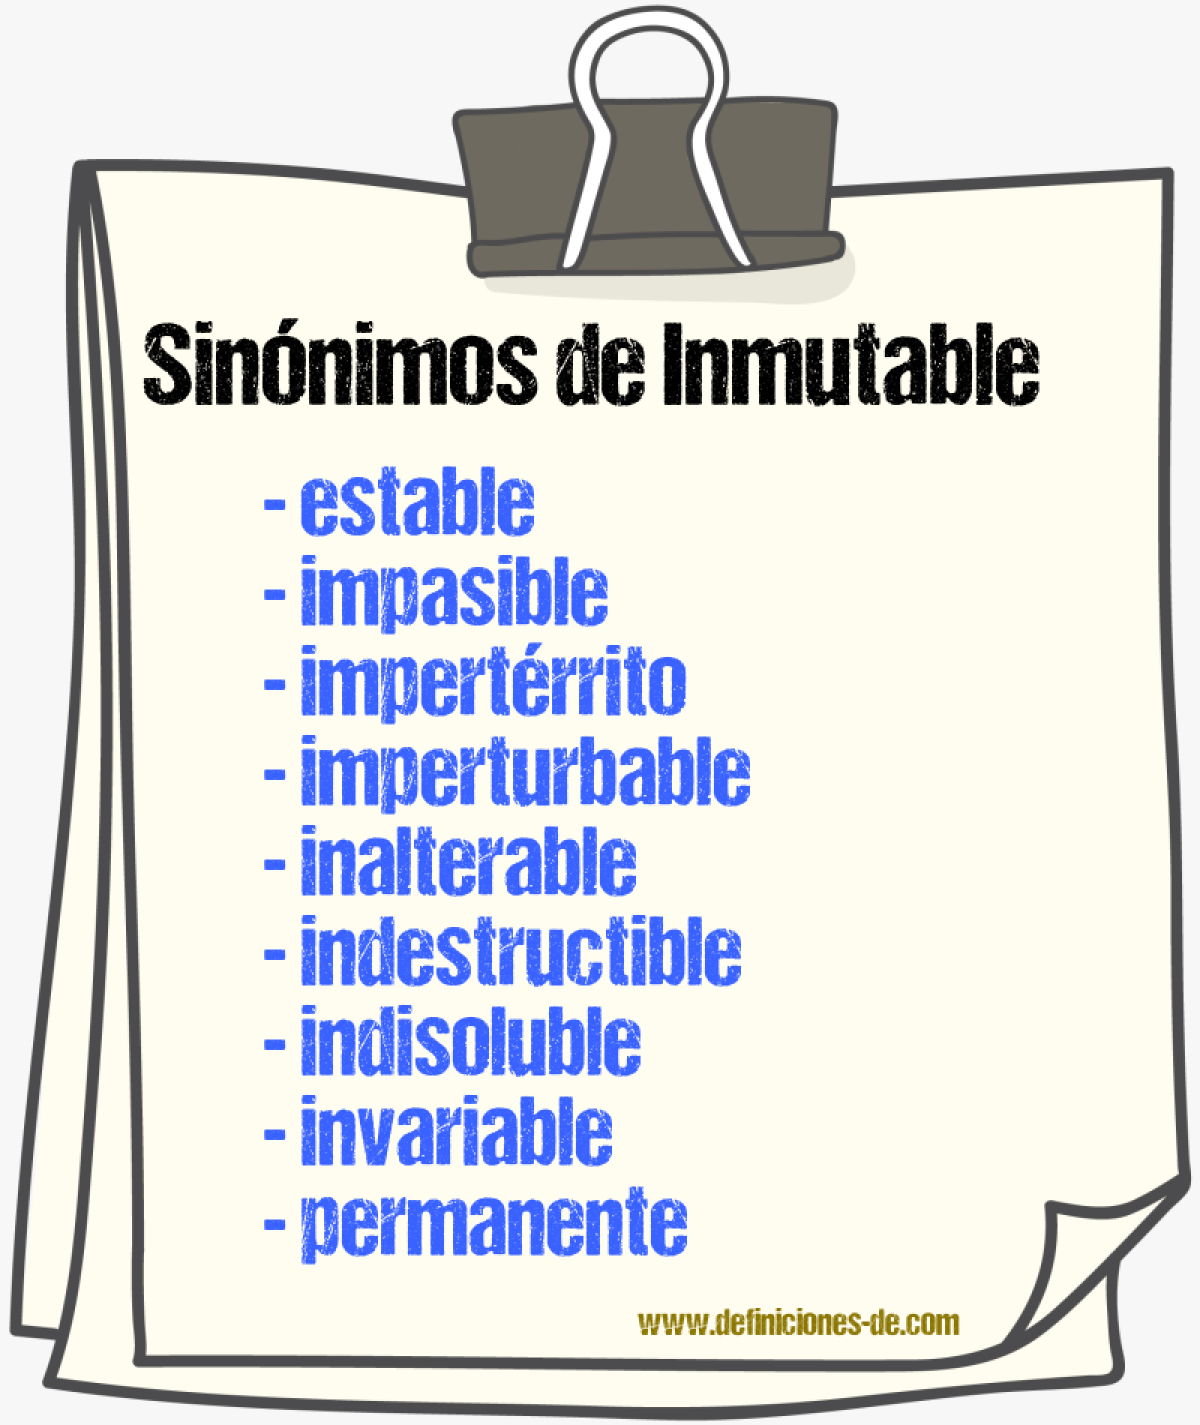 Sinónimos de inmutable